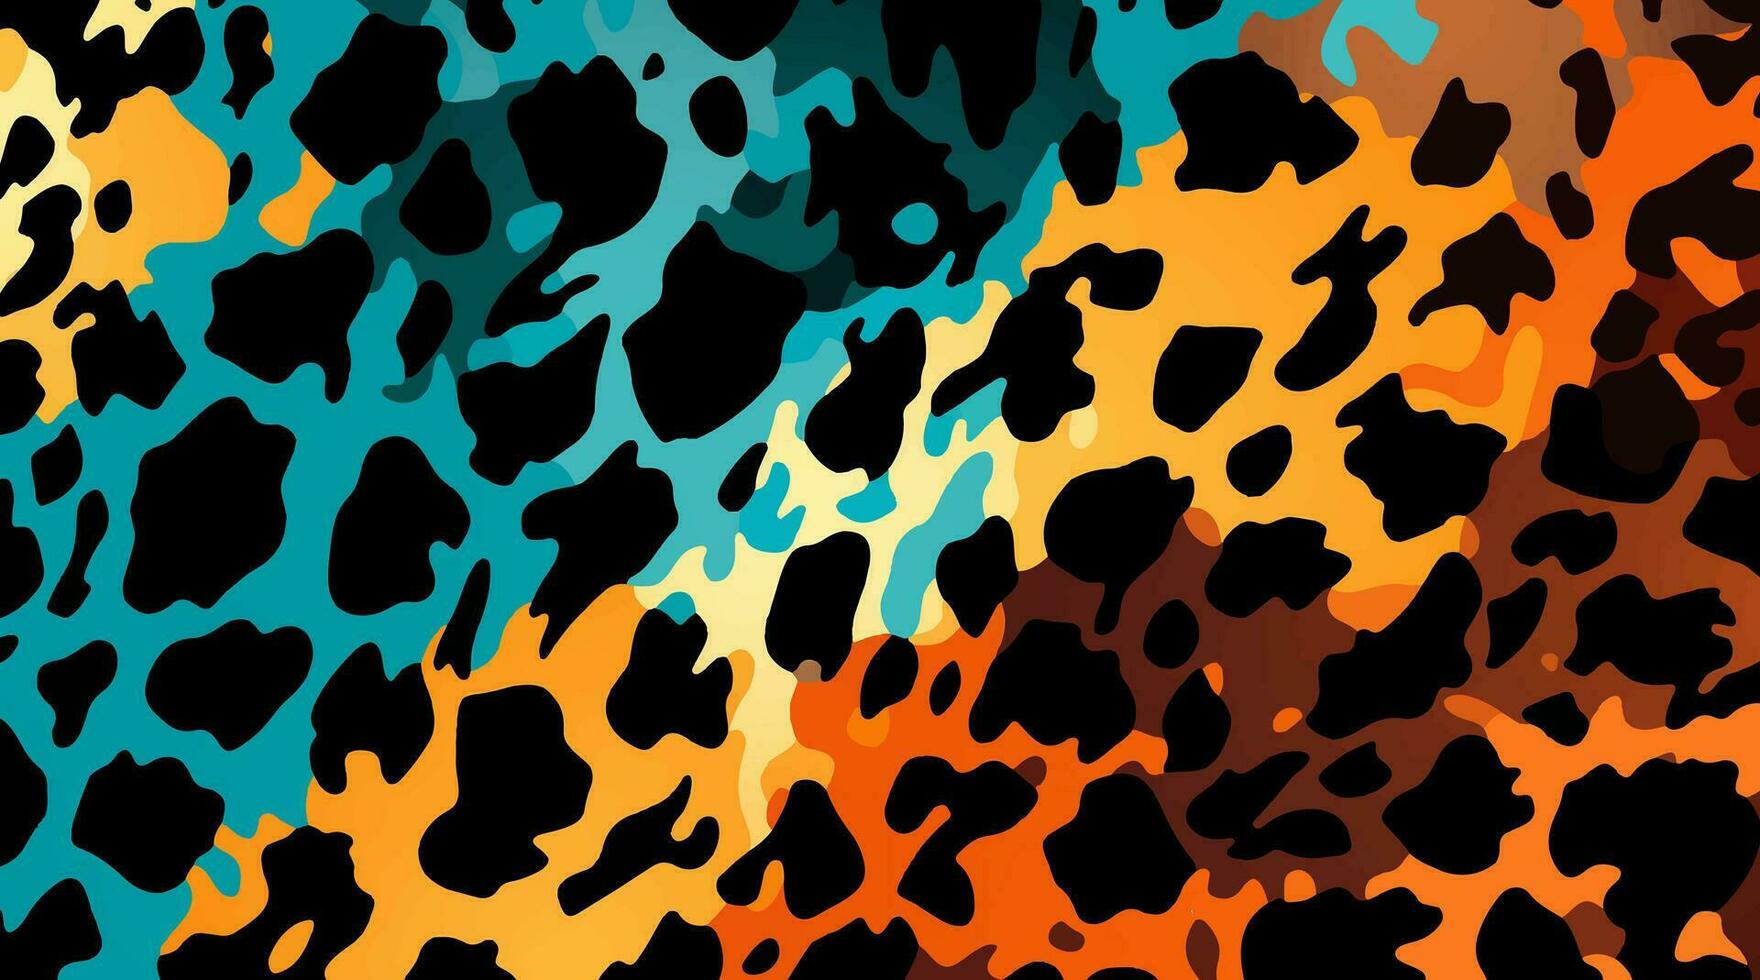 colorato leopardo modello struttura, colorato camuffare leopardo vettore, leopardo pelliccia struttura o astratto modello siamo progettato per uso nel tessile, carta da parati, tessuto, abbigliamento, batik, sfondo, ricamo vettore